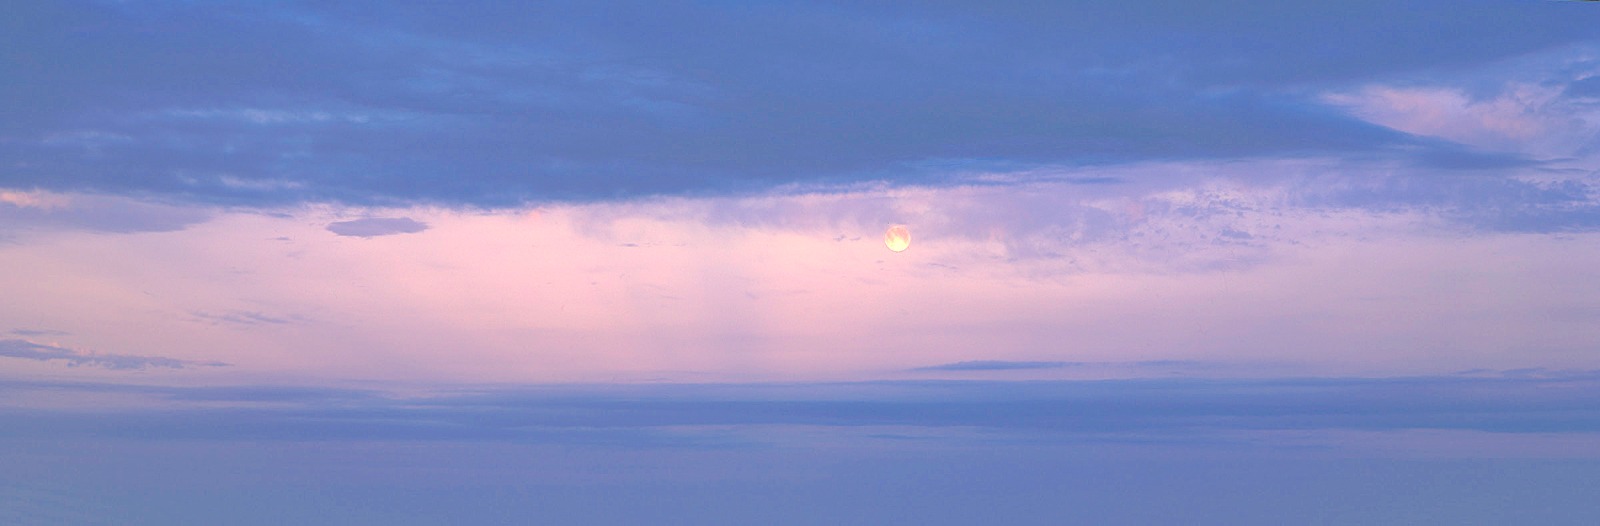 Water and Sky: "Atlantic Moonrise"